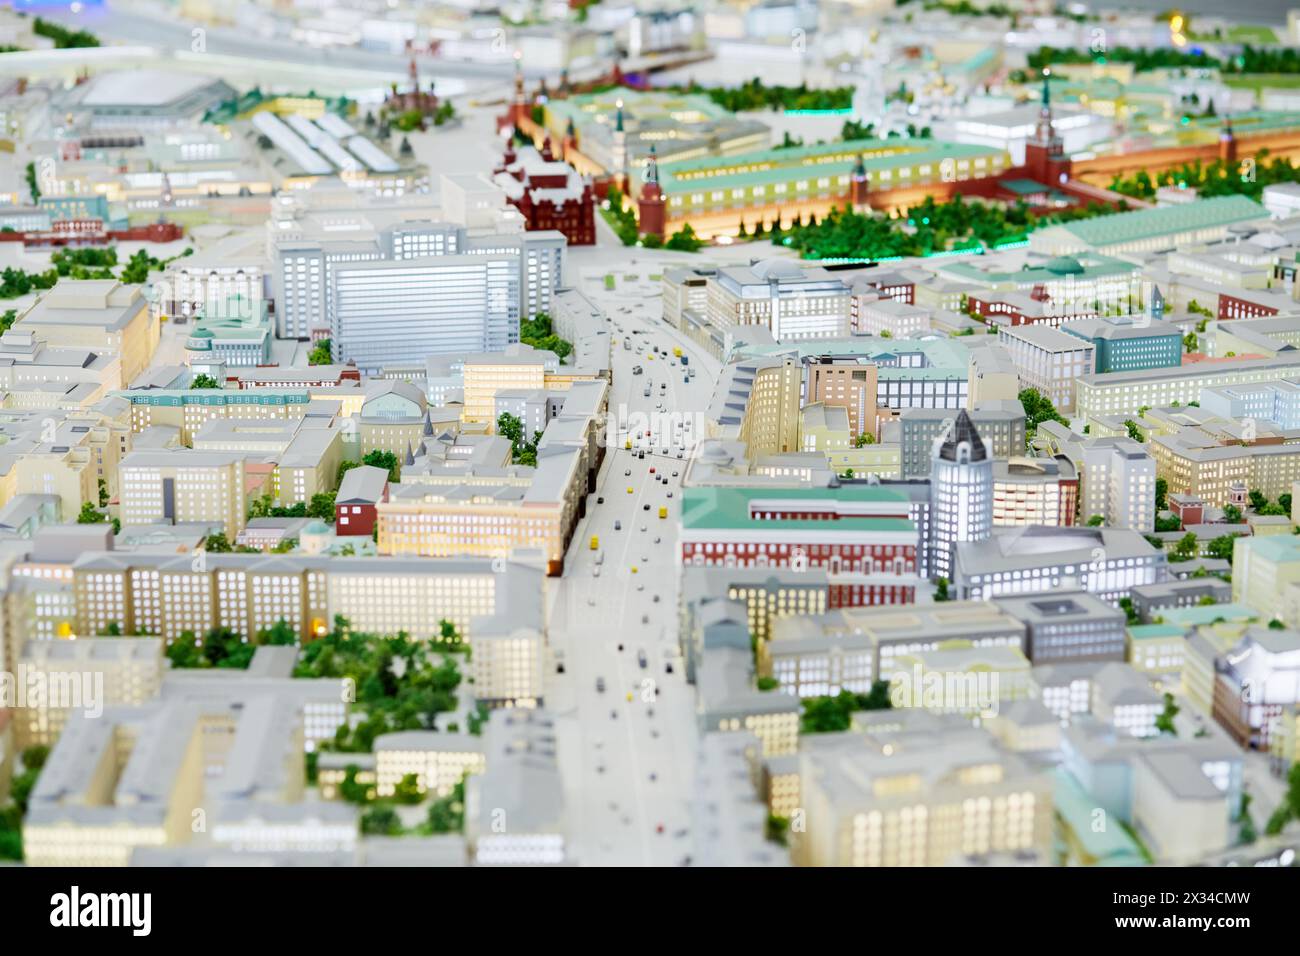 MOSKAU, RUSSLAND - 20. Dezember 2014: Layout der Twerskaja-Straße bei der VDNKH-Ausstellung. Twerskaja Straße eine der Hauptstraßen des Stadtteils Tverskoy von t Stockfoto